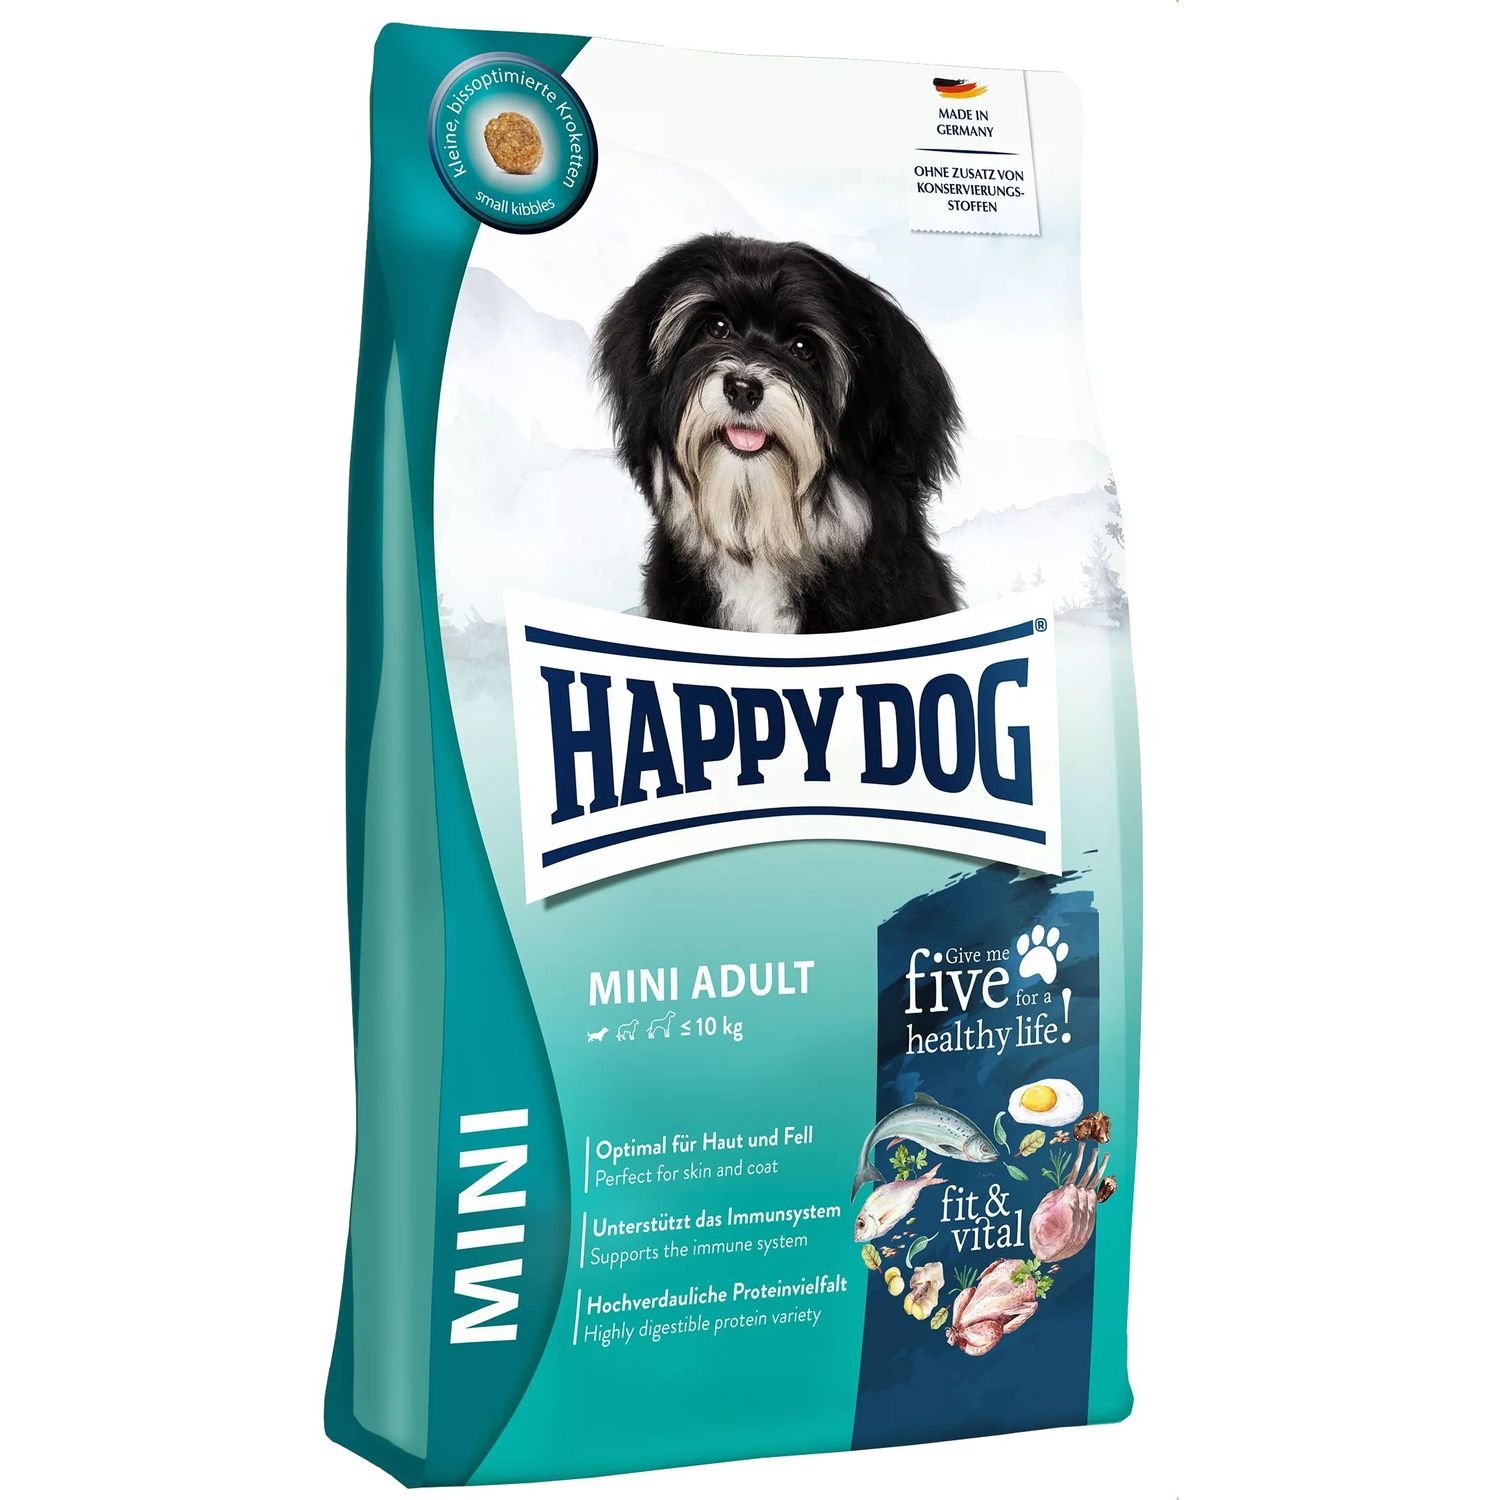 Сухой корм для щенков Happy Dog HD fit & vital Mini Puppy, 4 кг - фото 1